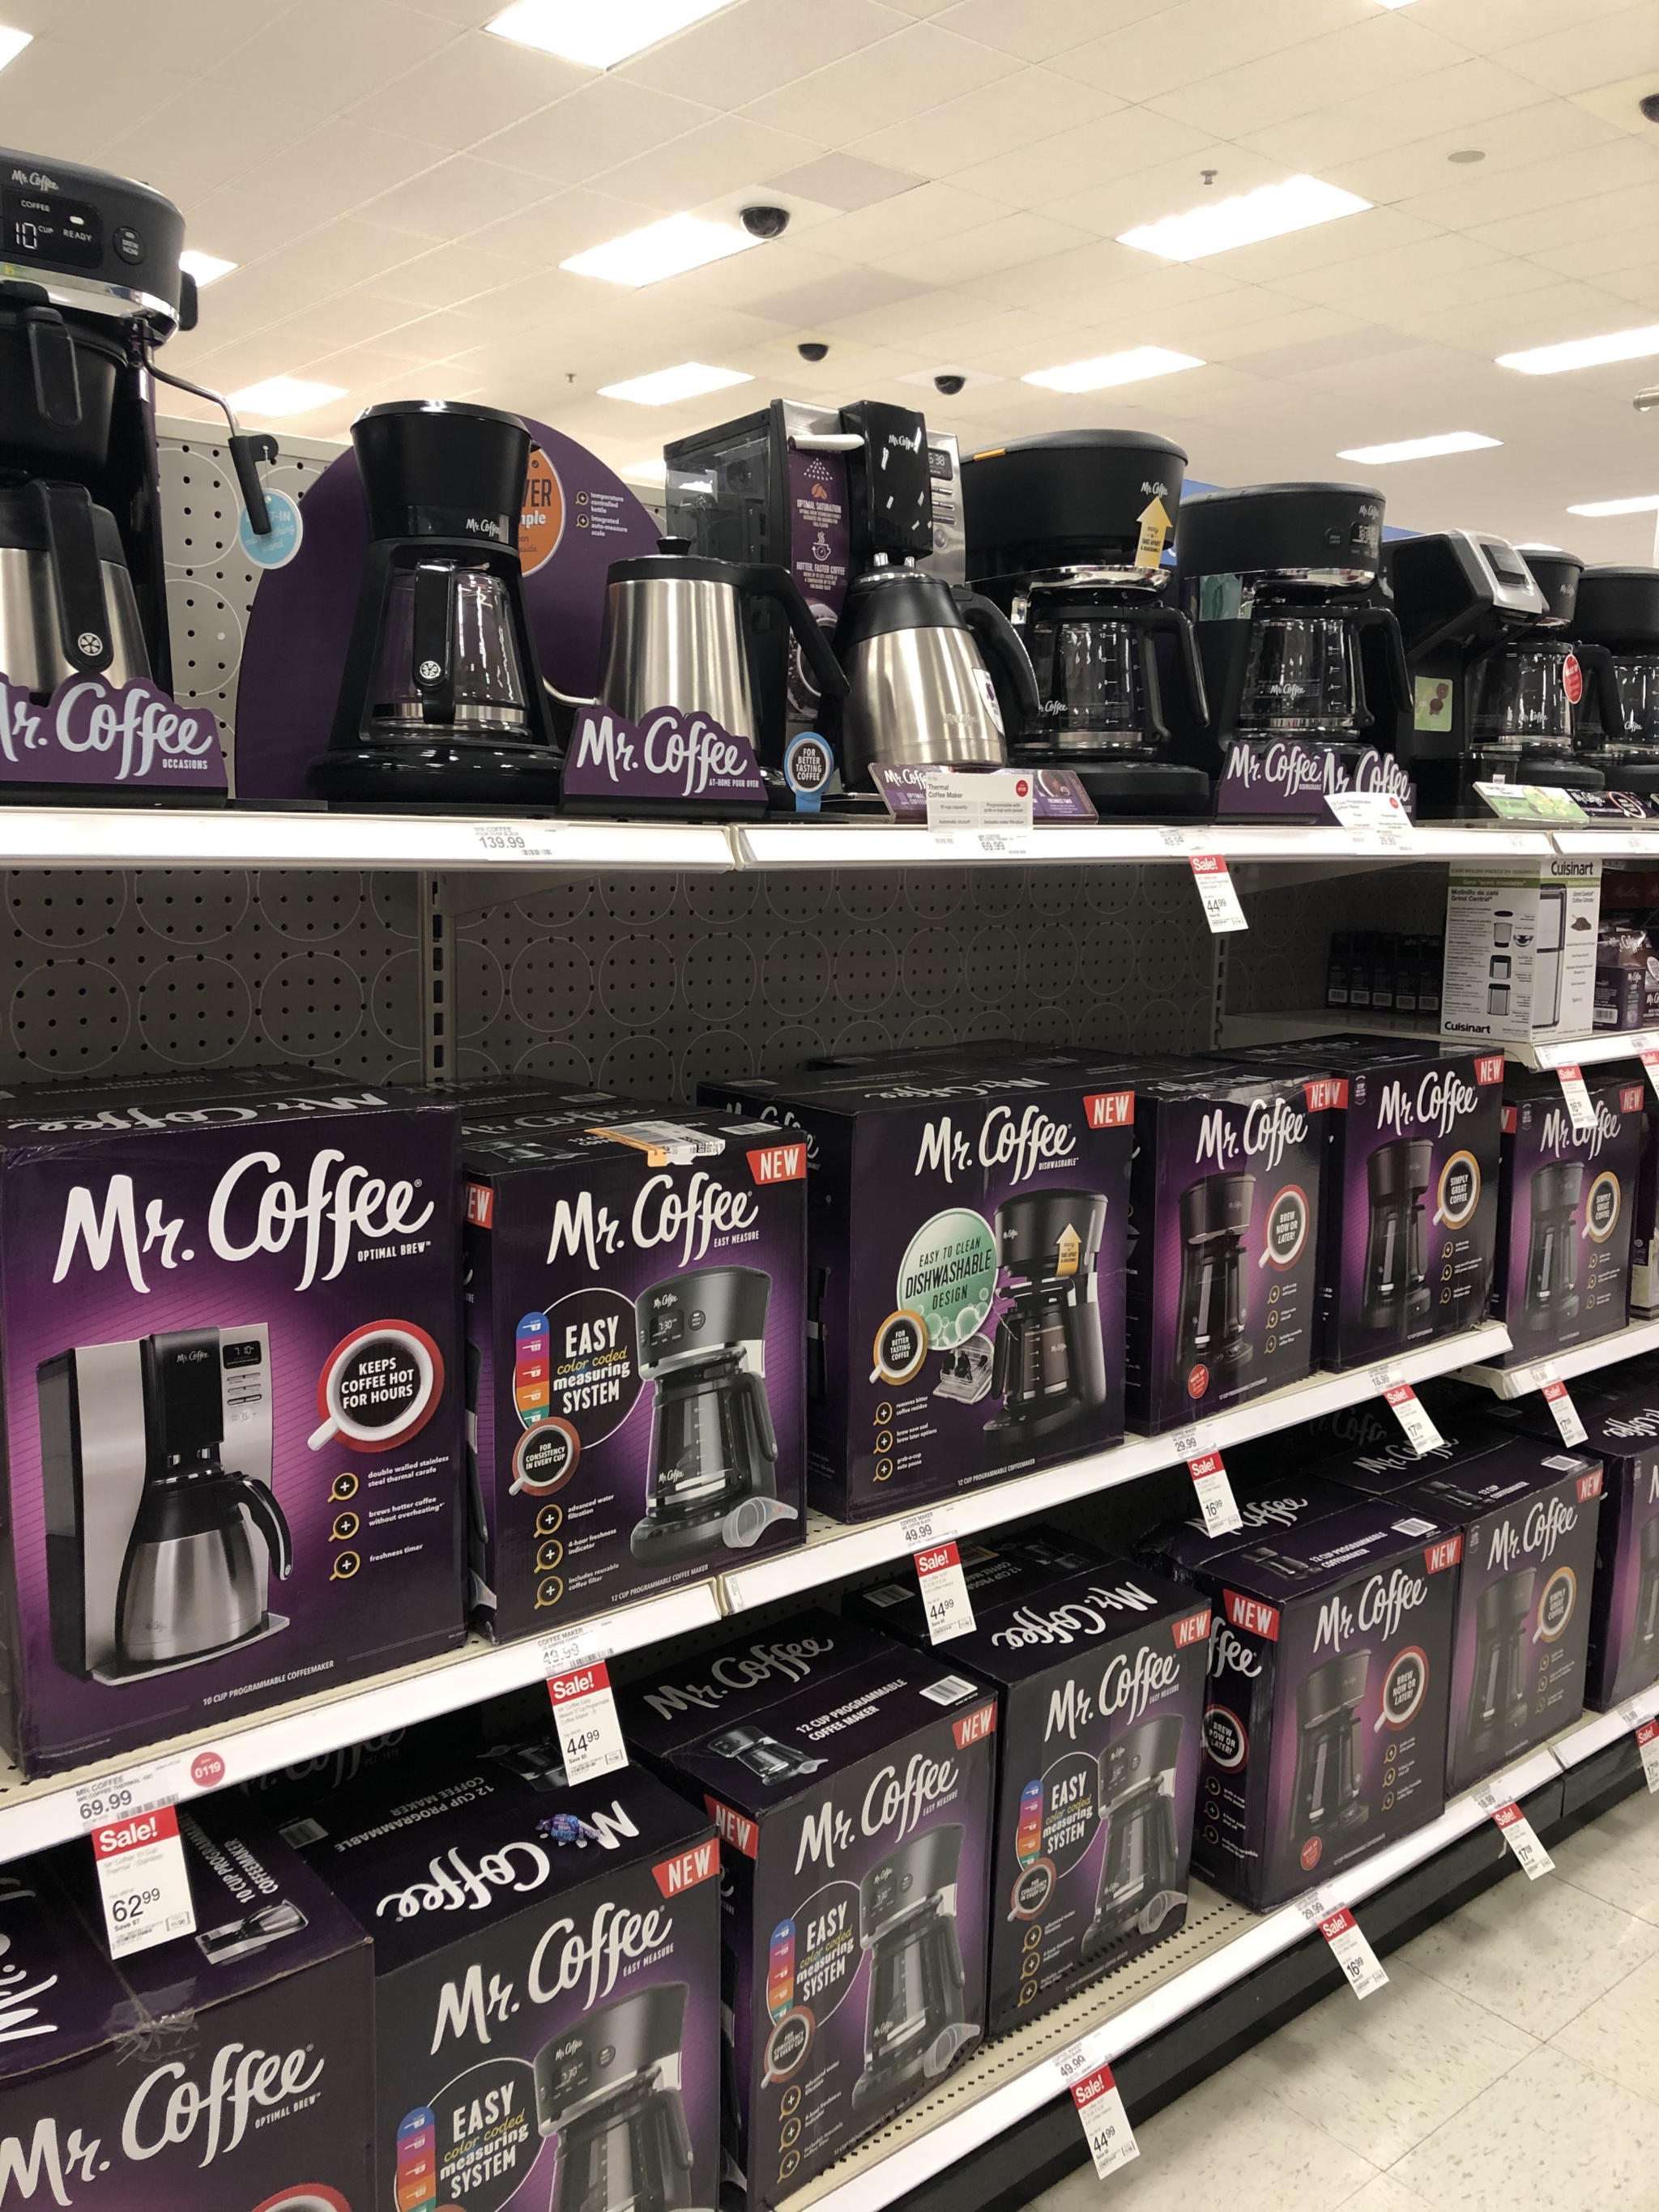 Mr Coffee at Target